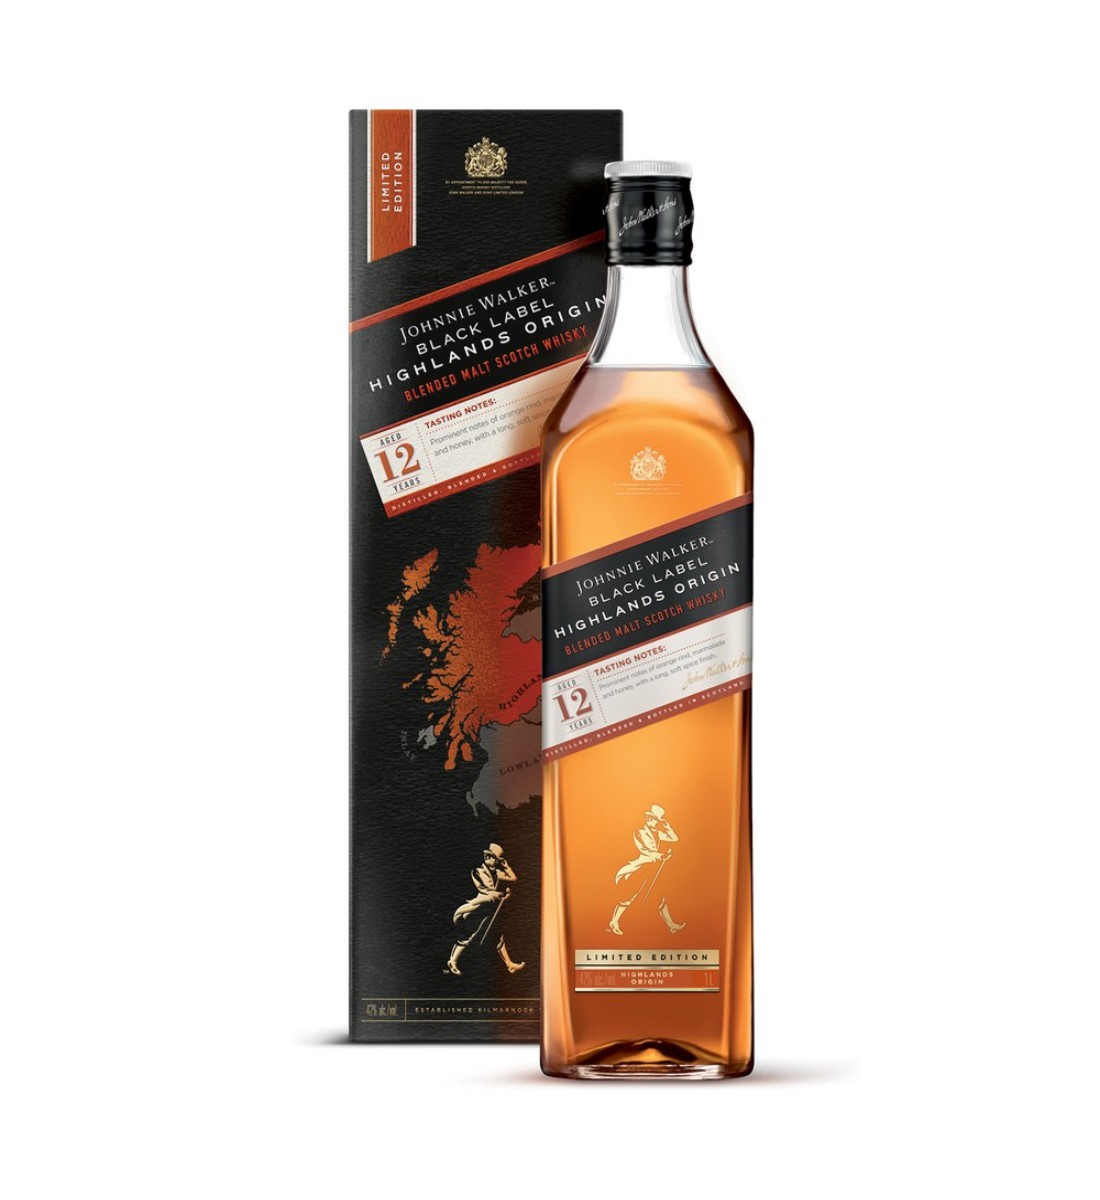 Johnnie Walker Black Label Highlands Origin Whisky 12 ani 1L